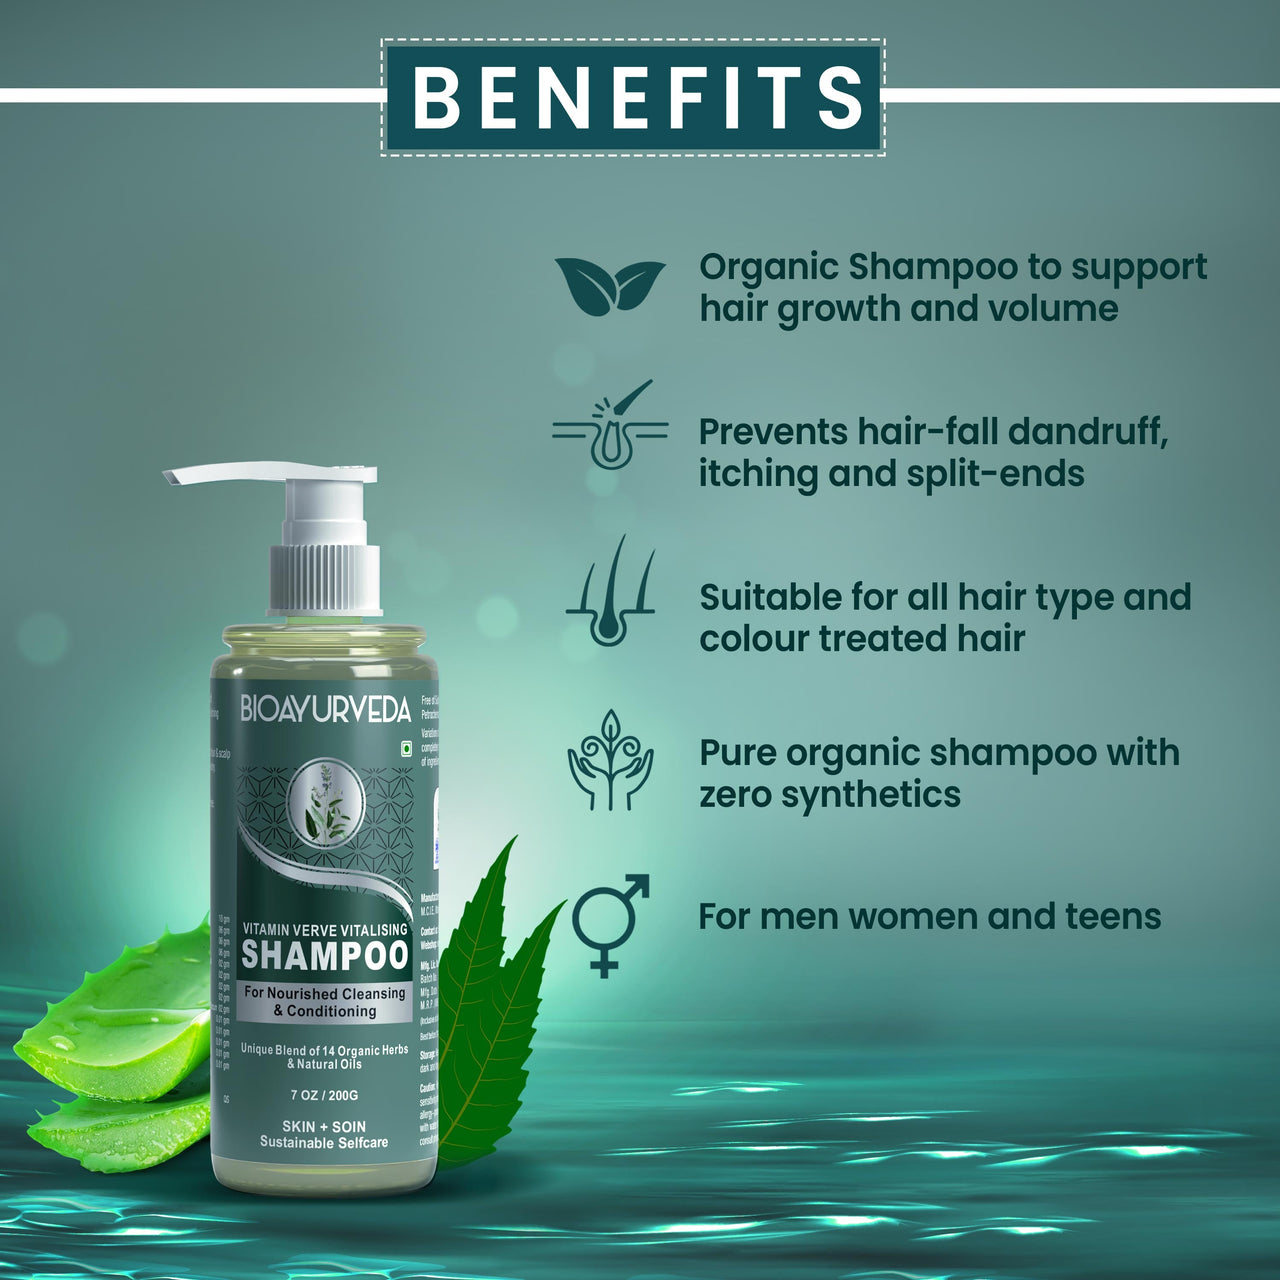 Vitamin Verve Vitalising Shampoo Benefits